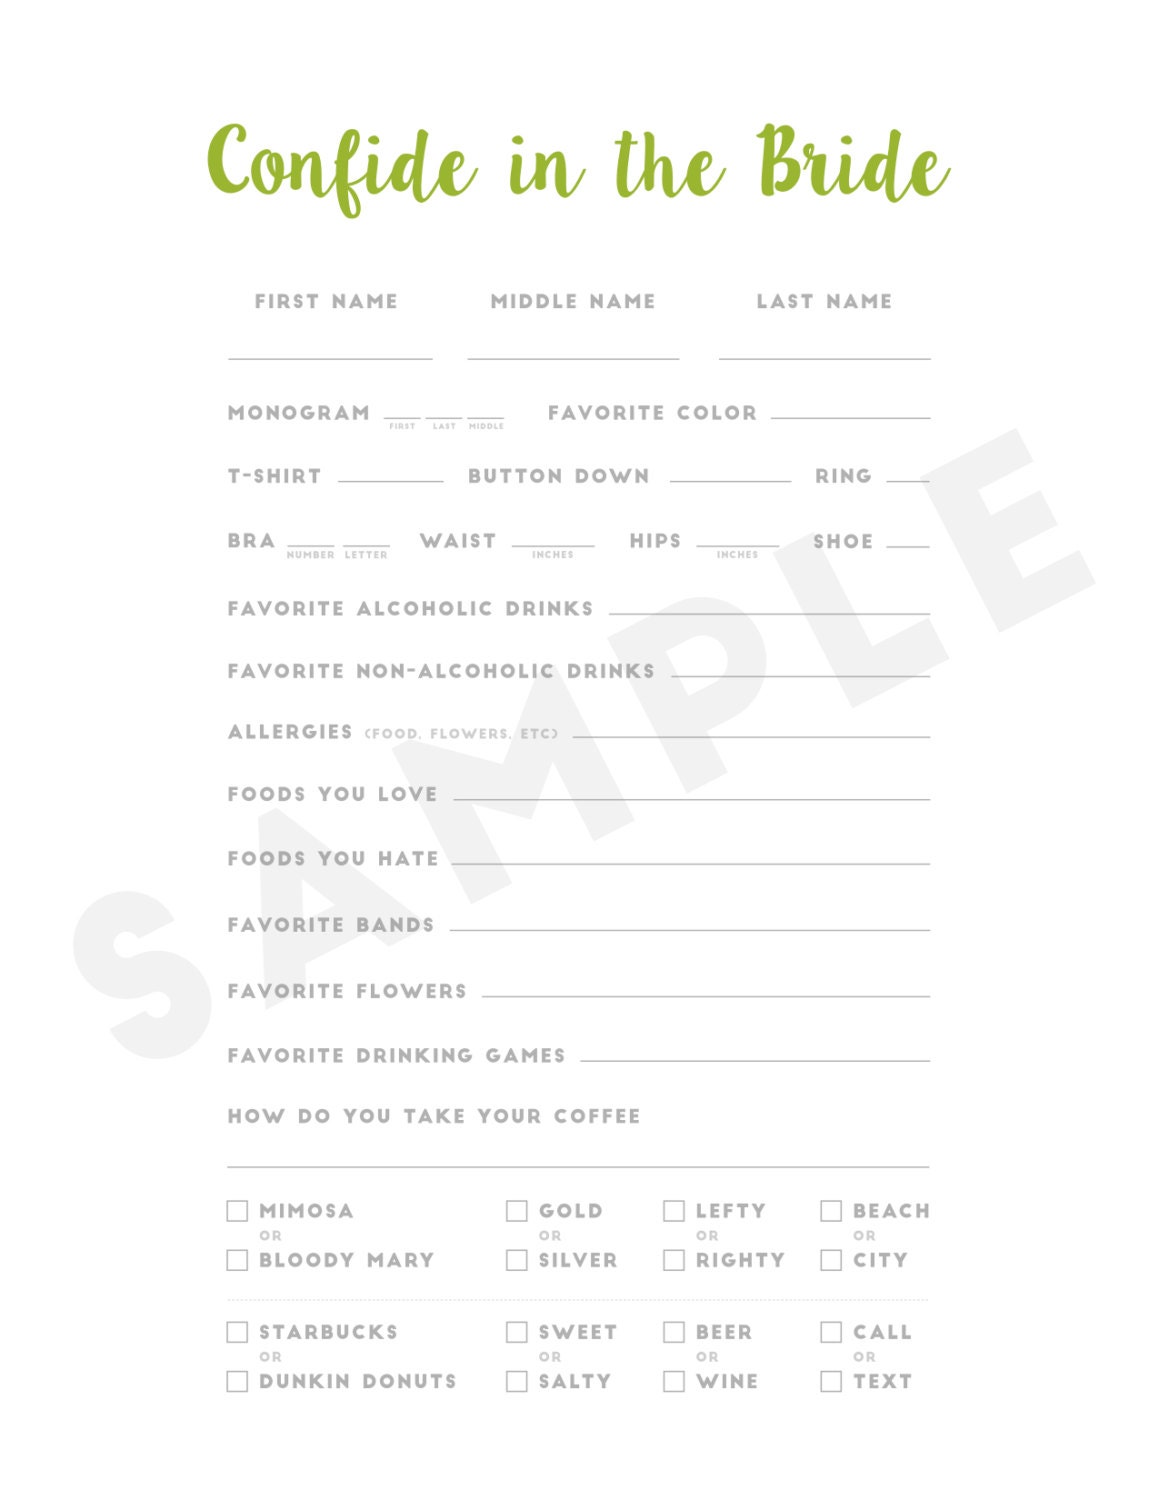 confide-in-the-bride-bridesmaid-information-sheet-8-5-x-11